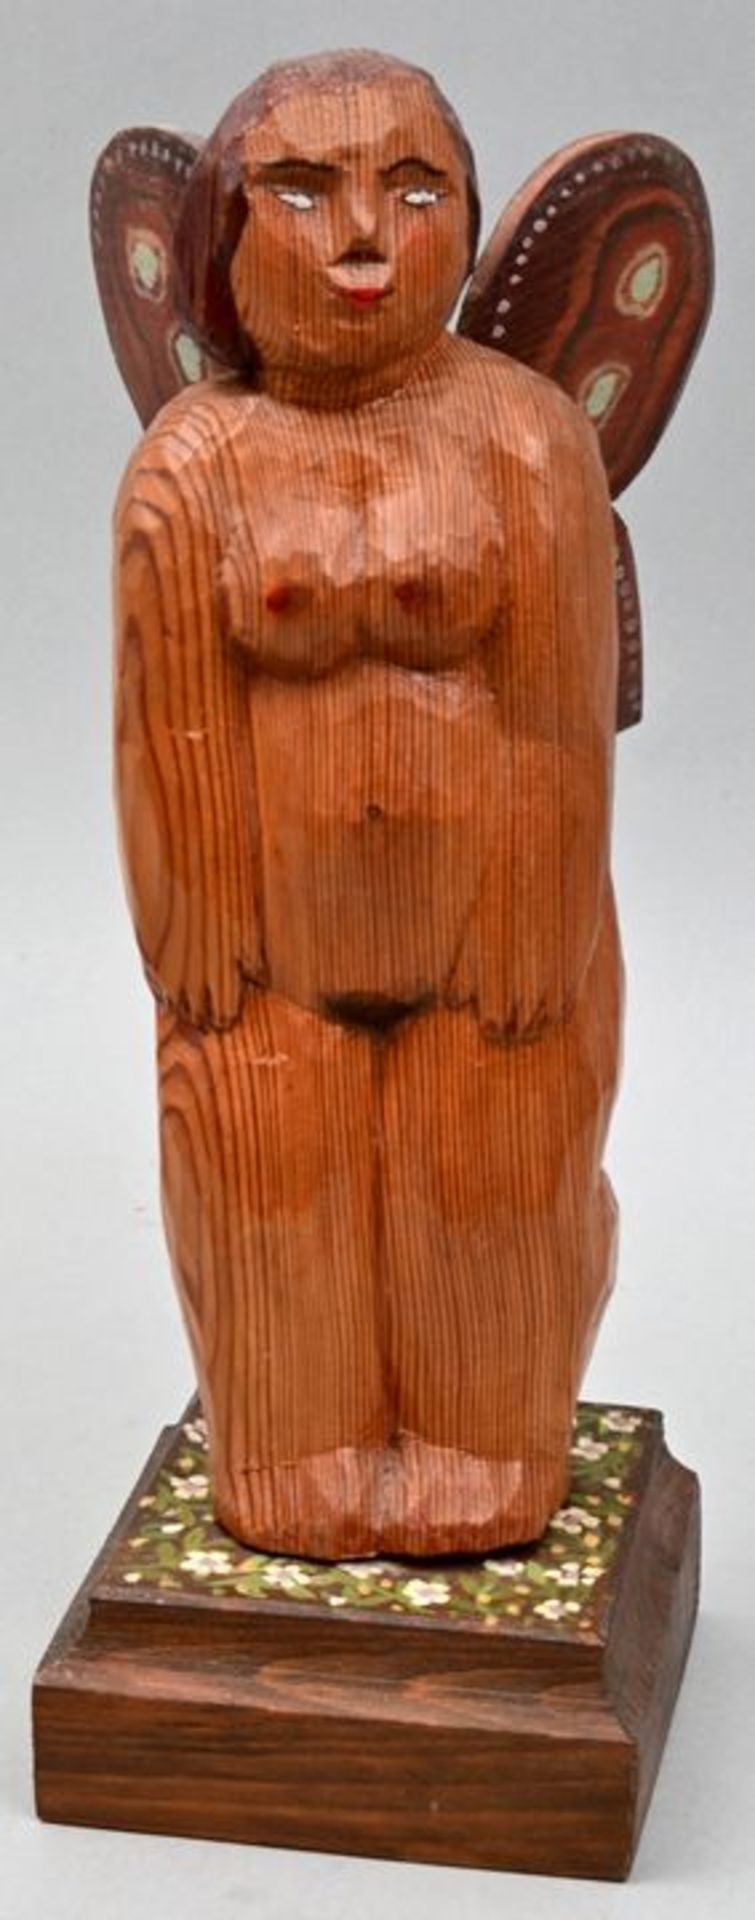 Bräunling, Gottfried, Engel / Small wooden figure